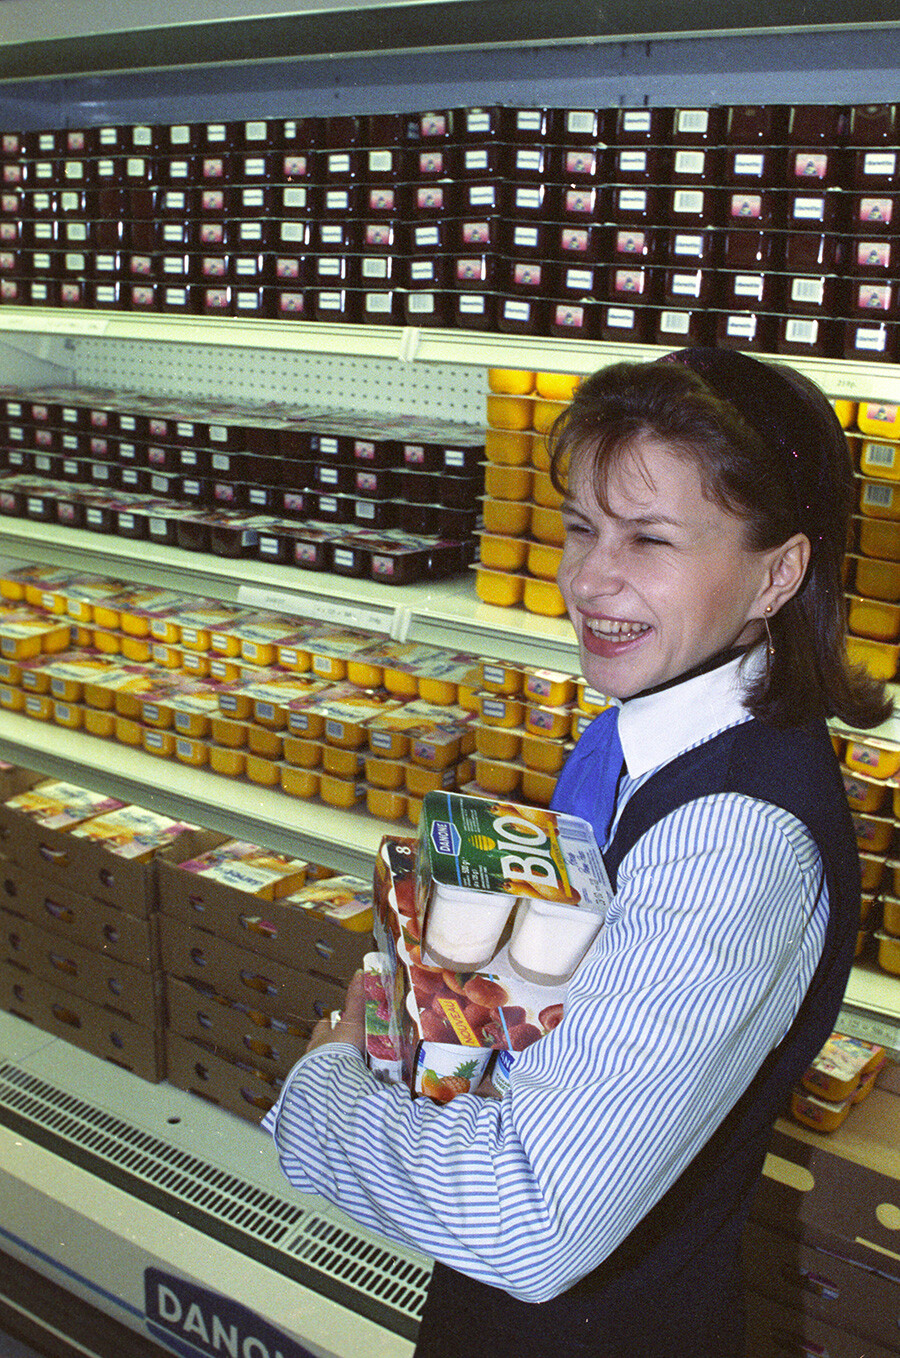 Einer der ersten Supermärkte und der erste Standort des Molkereiunternehmens Danone wurde im Zentrum Moskaus eröffnet. Die Menschen standen Schlange für ausländische Joghurts. 